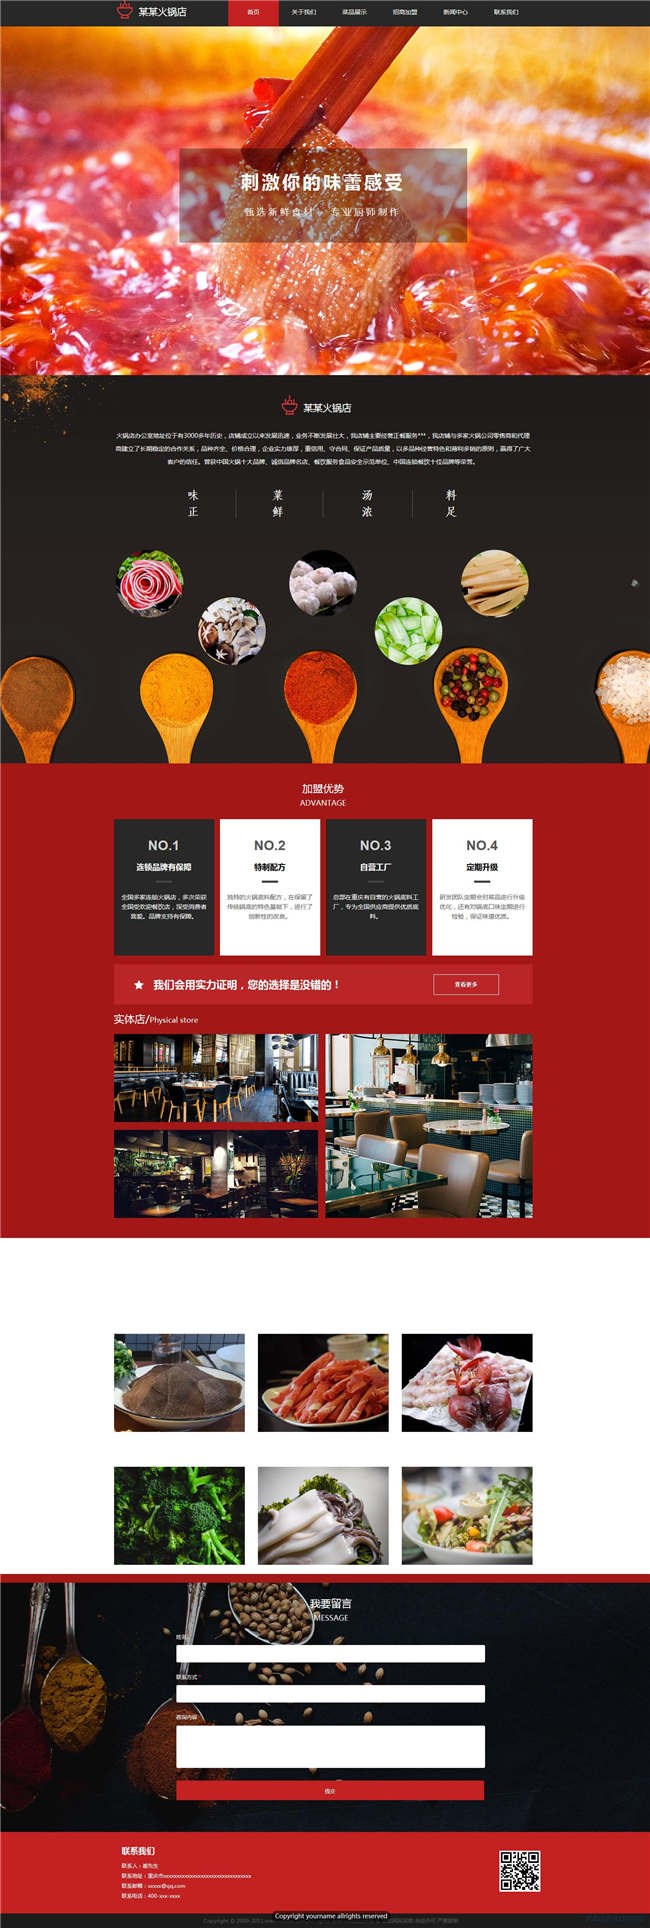 火锅店网站Wordpress模板(带手机站)预览图